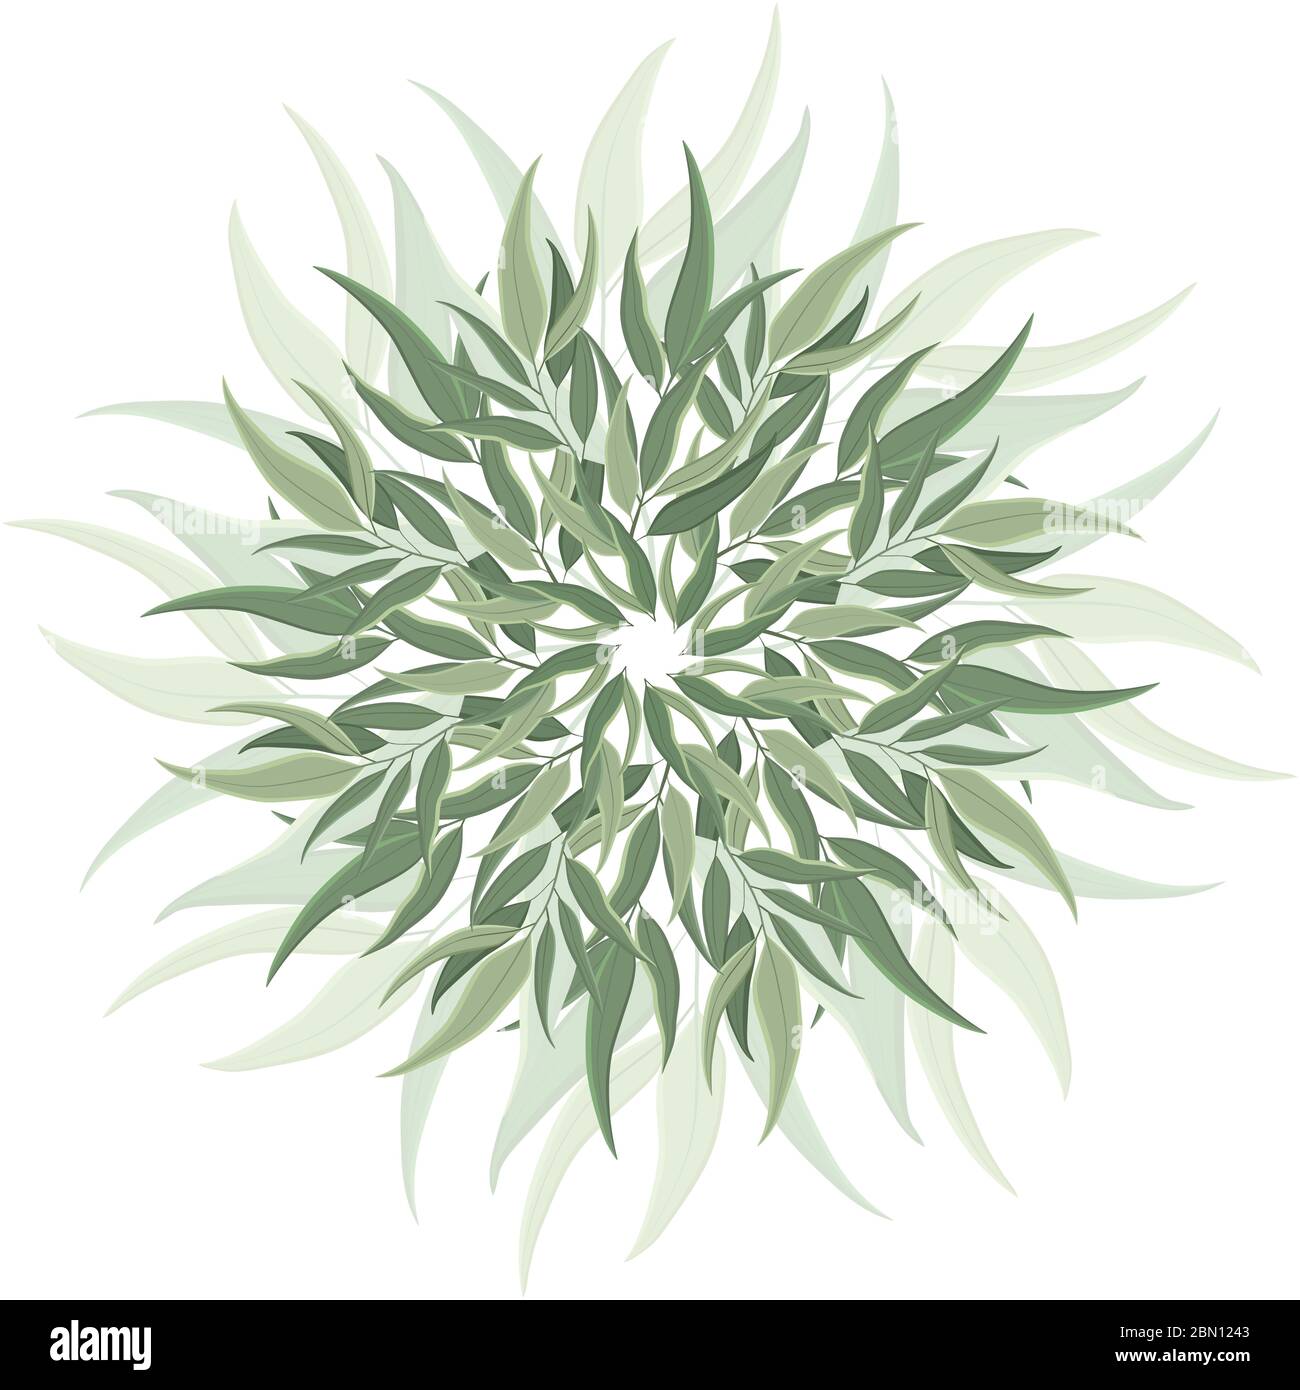 Décoration ronde abstraite, mandala avec feuilles d'eucalyptus. Motif botanique circulaire, motif isolé sur fond blanc Illustration de Vecteur